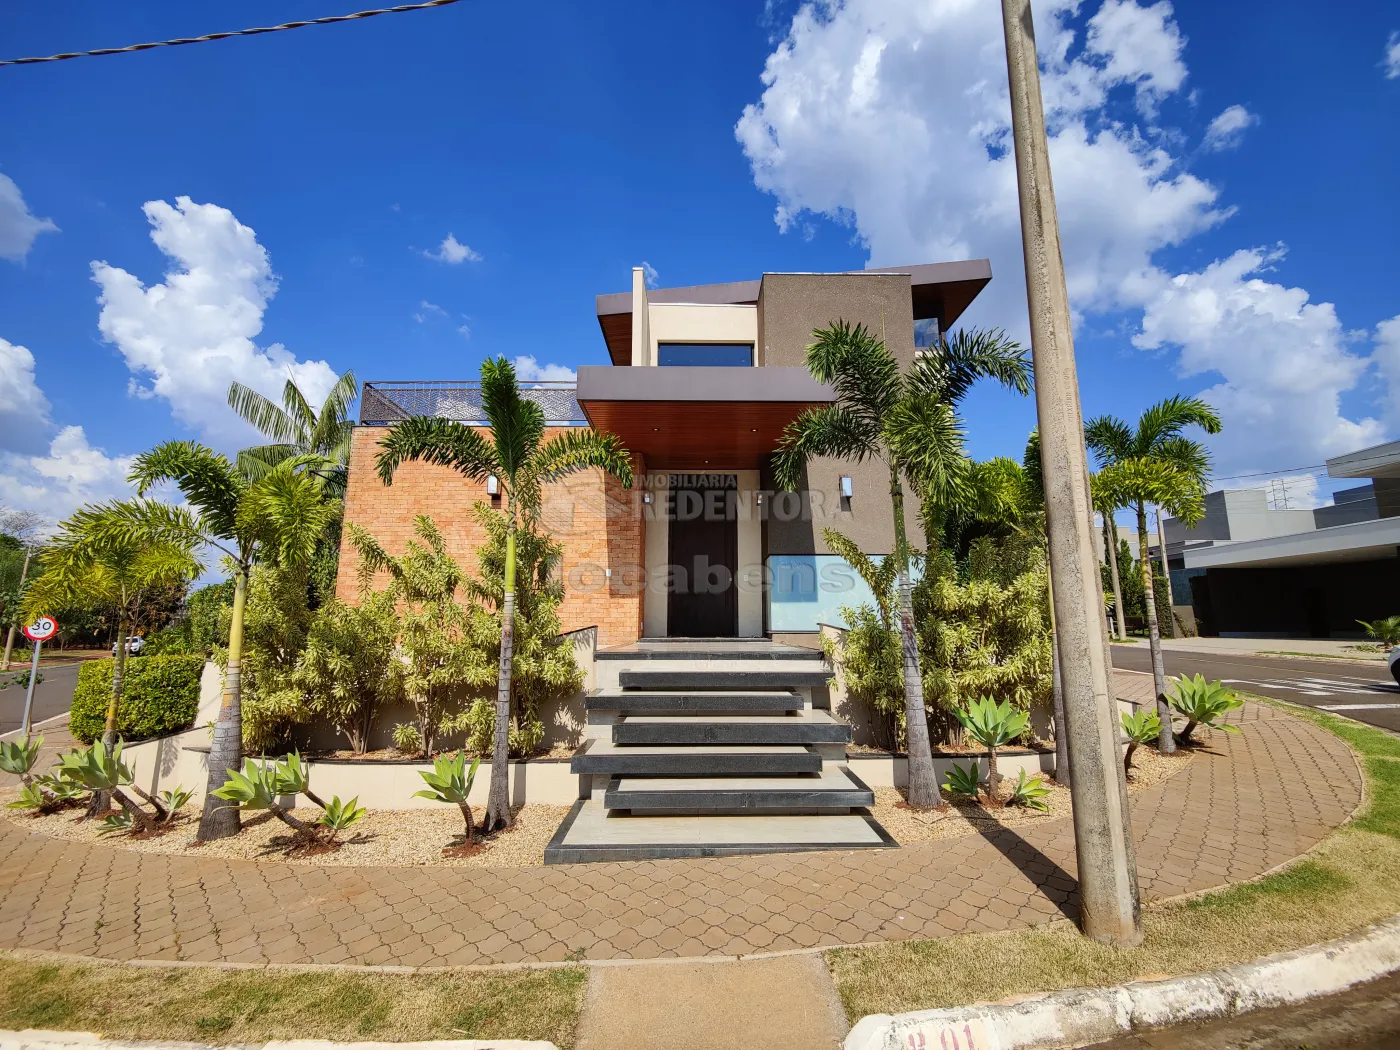 Comprar Casa / Condomínio em Mirassol apenas R$ 2.850.000,00 - Foto 4